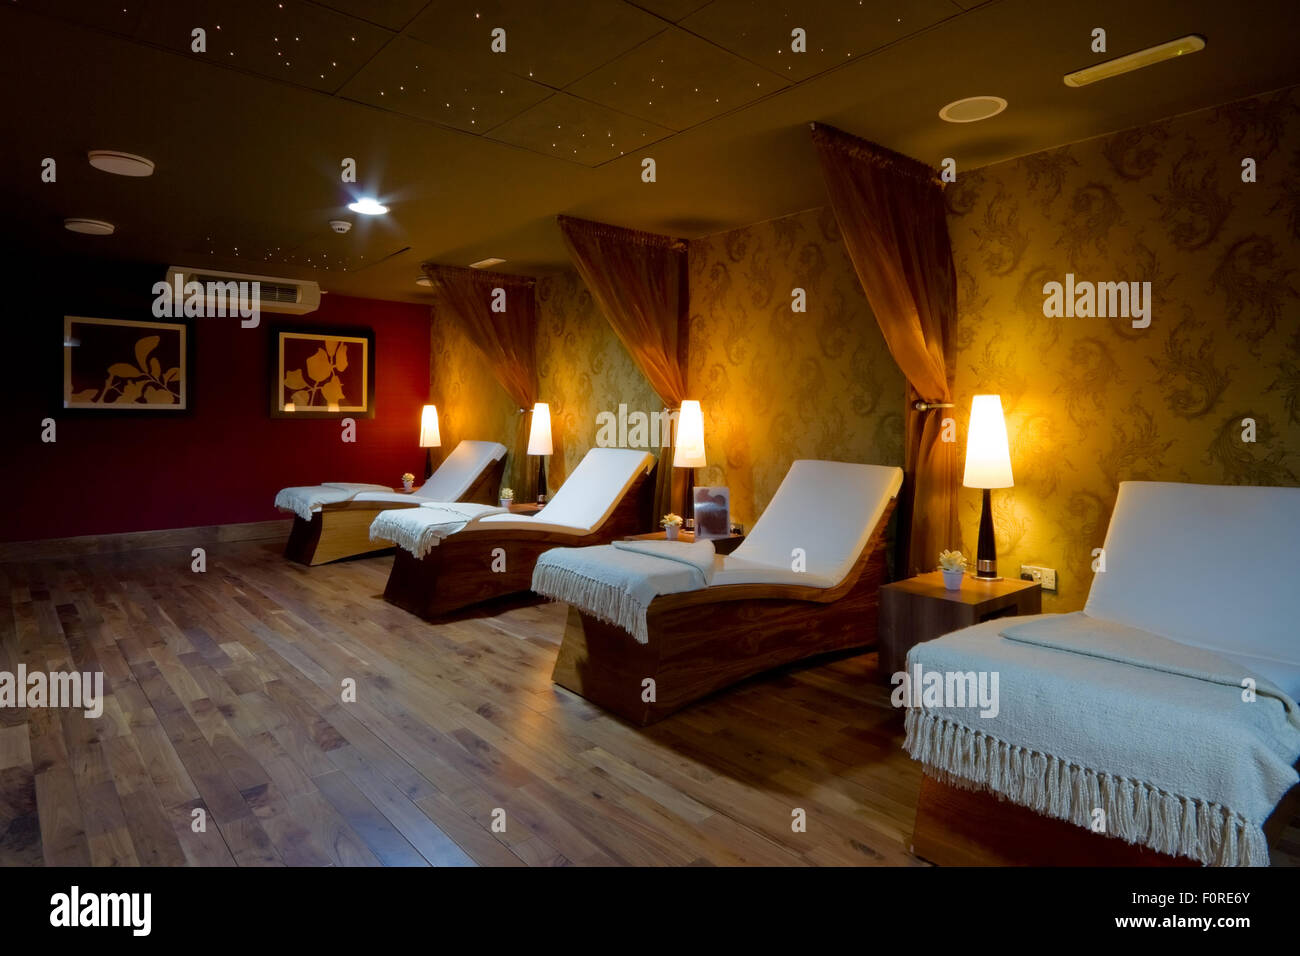 Salle de bain spa intérieur et de rangée de lits en bois avec des serviettes blanches Banque D'Images